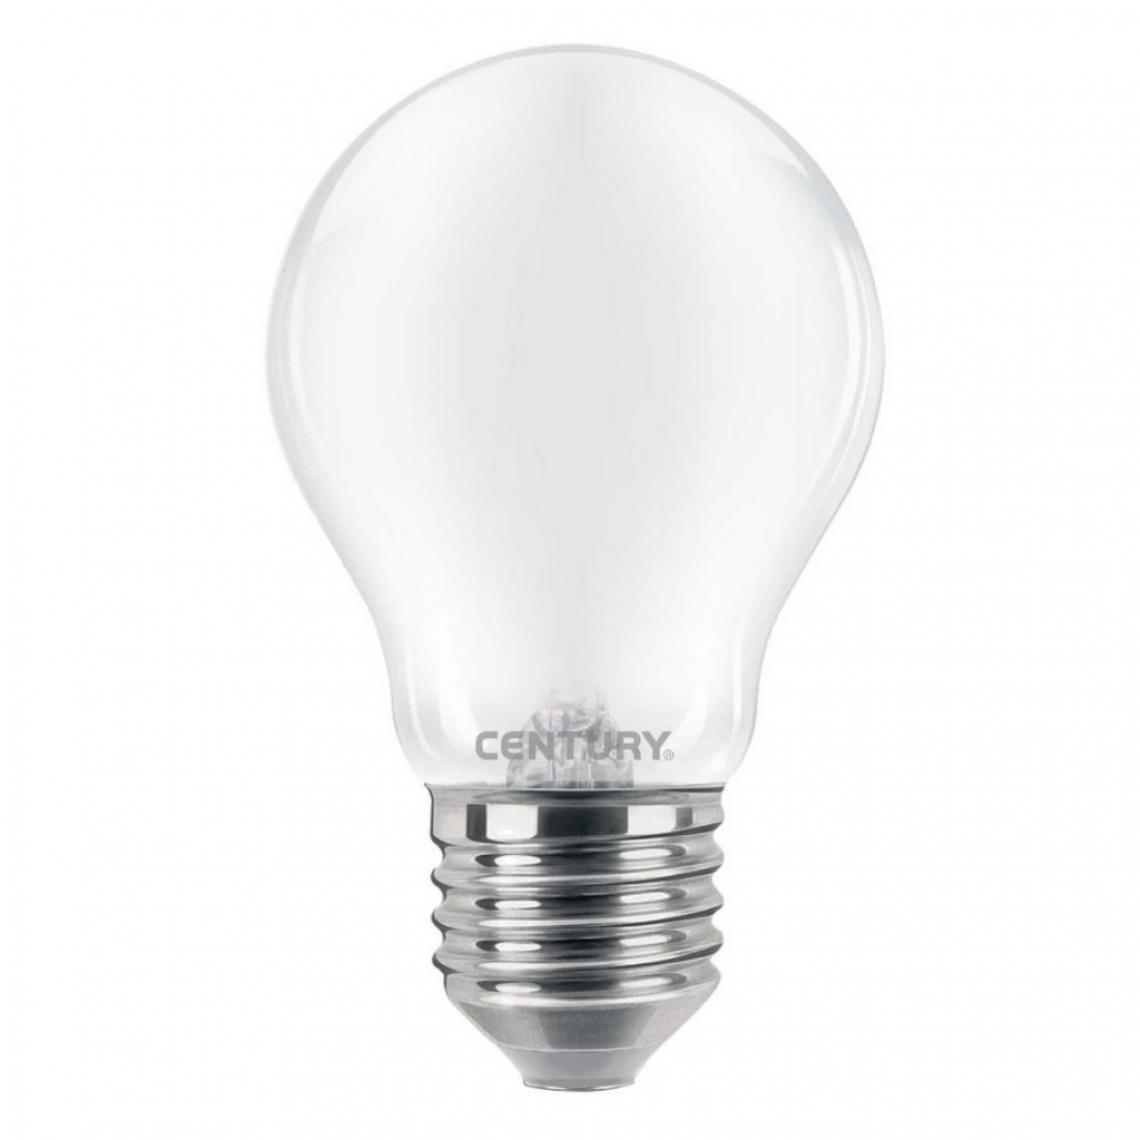 Alpexe - Ampoule LED E27 8 W 806 lm 6000 K - Ampoules LED